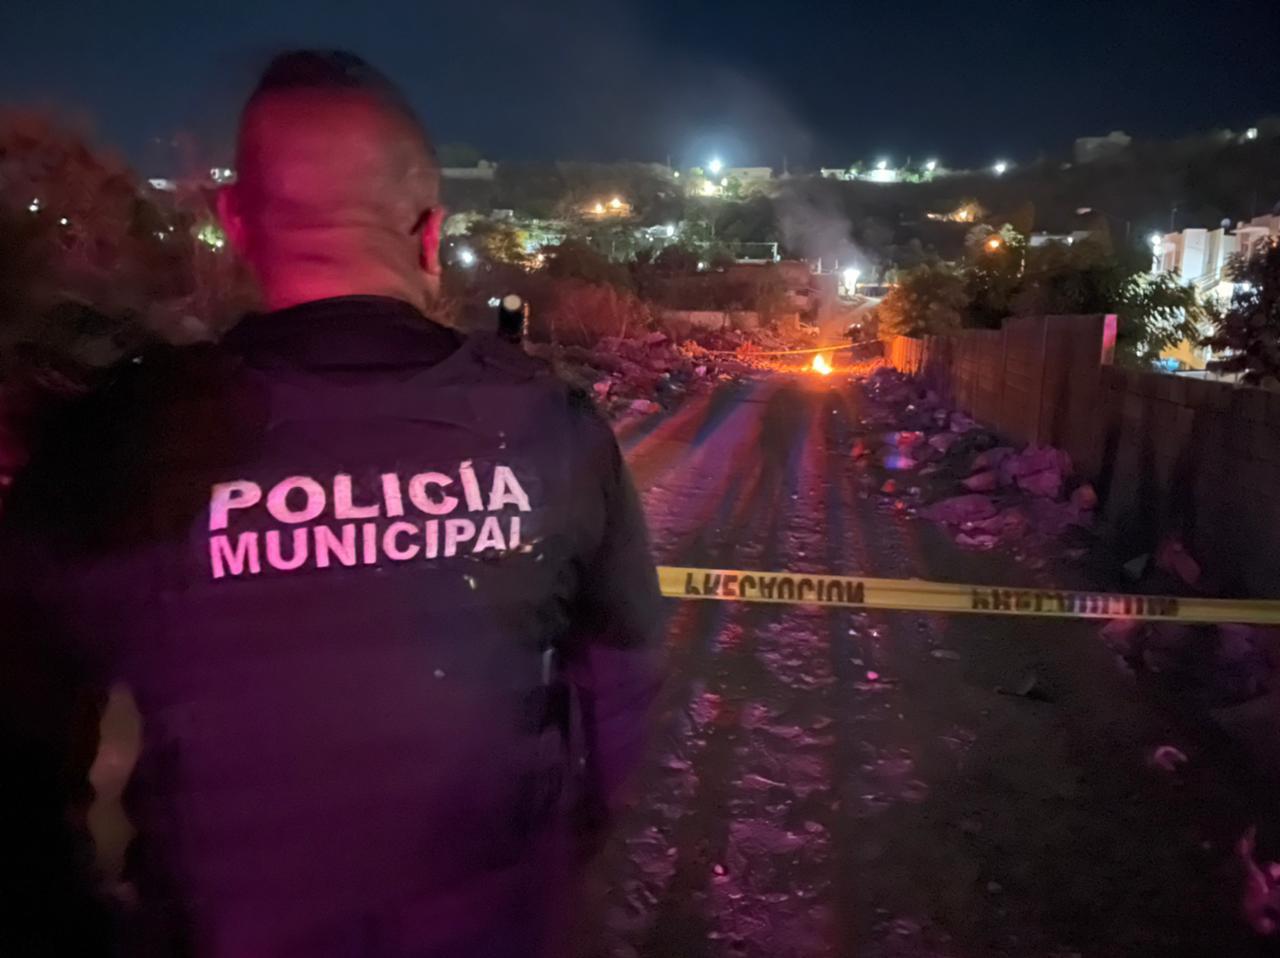 ¡Encobijado! Localizan el cadáver de una persona en Alturas del Sur, Culiacán